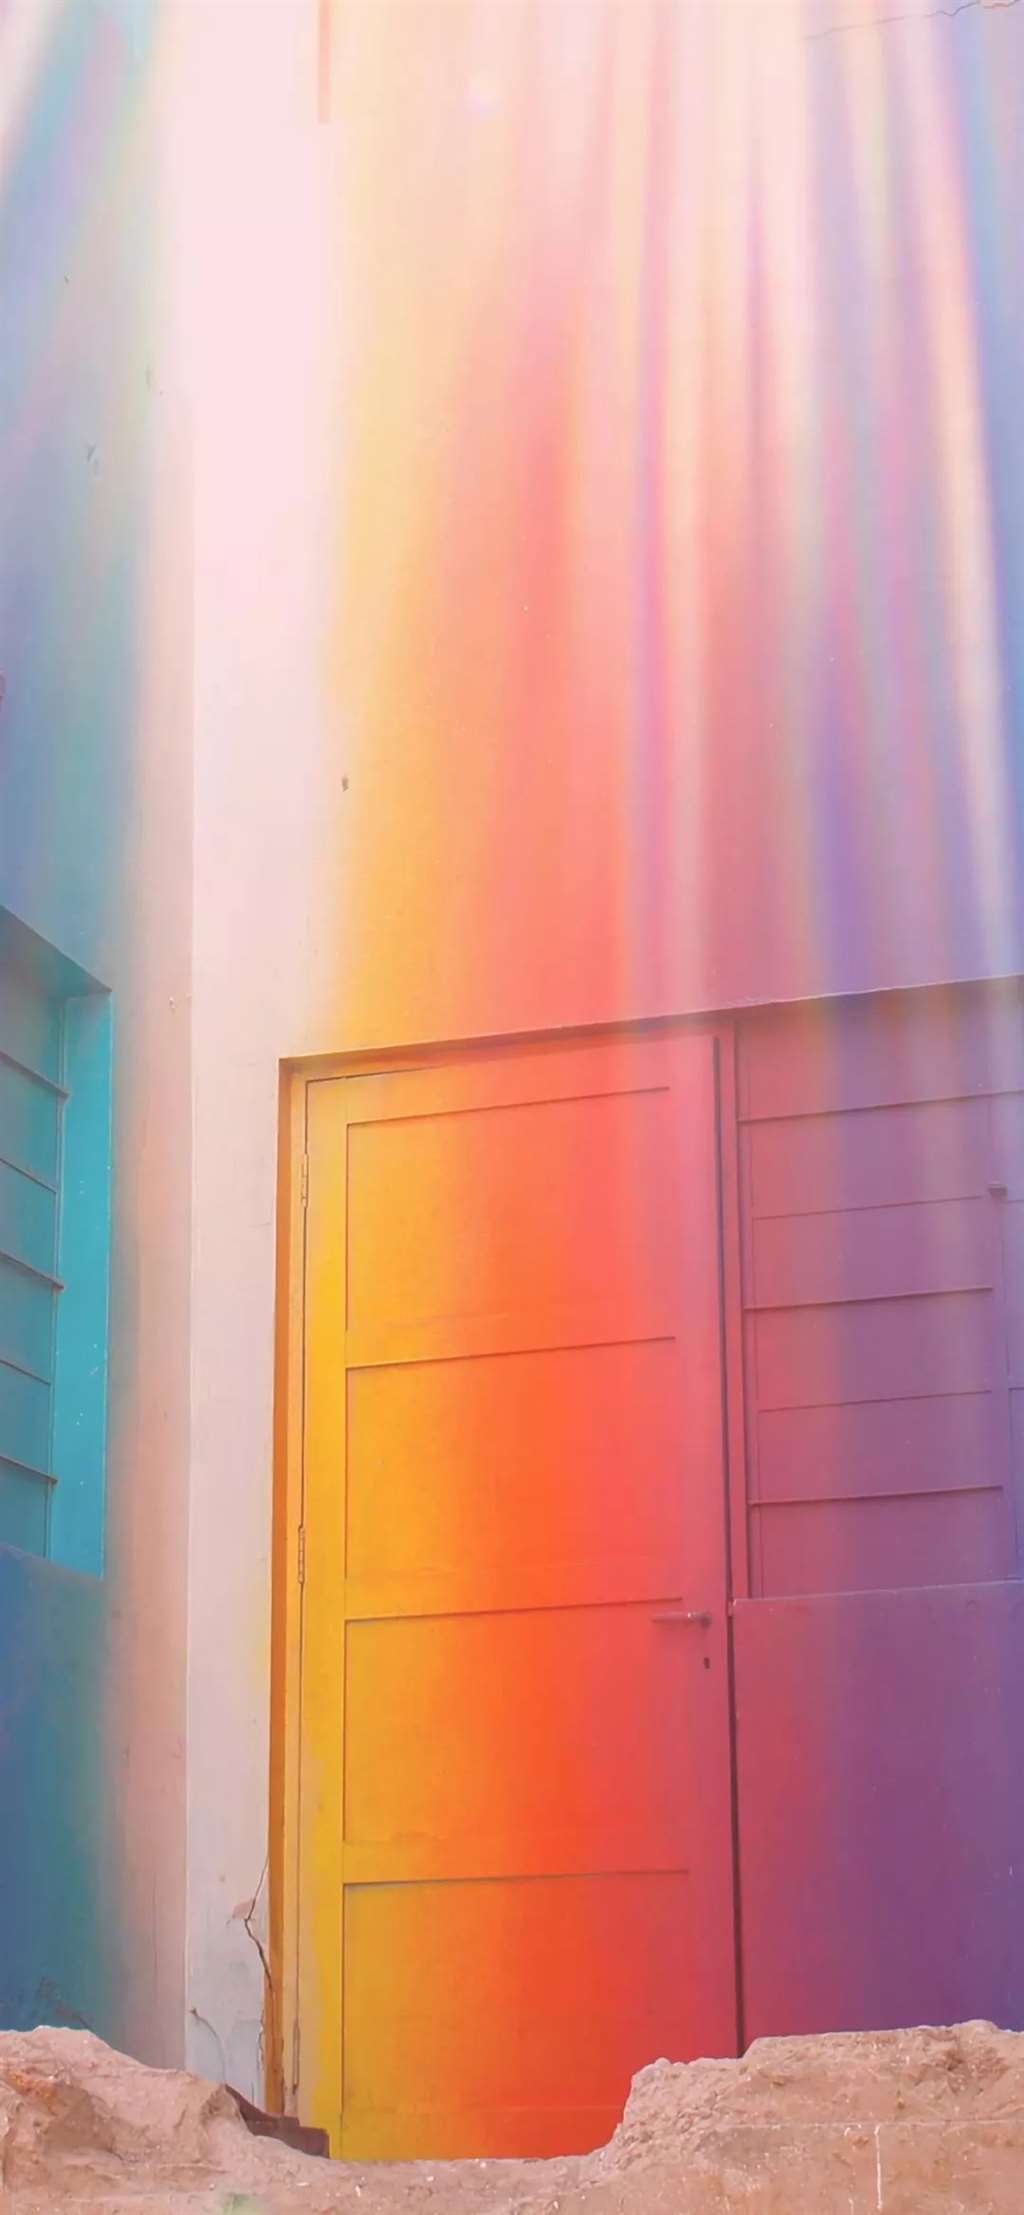 壁纸丨唯美彩虹壁纸丨看见彩虹会有好事发生